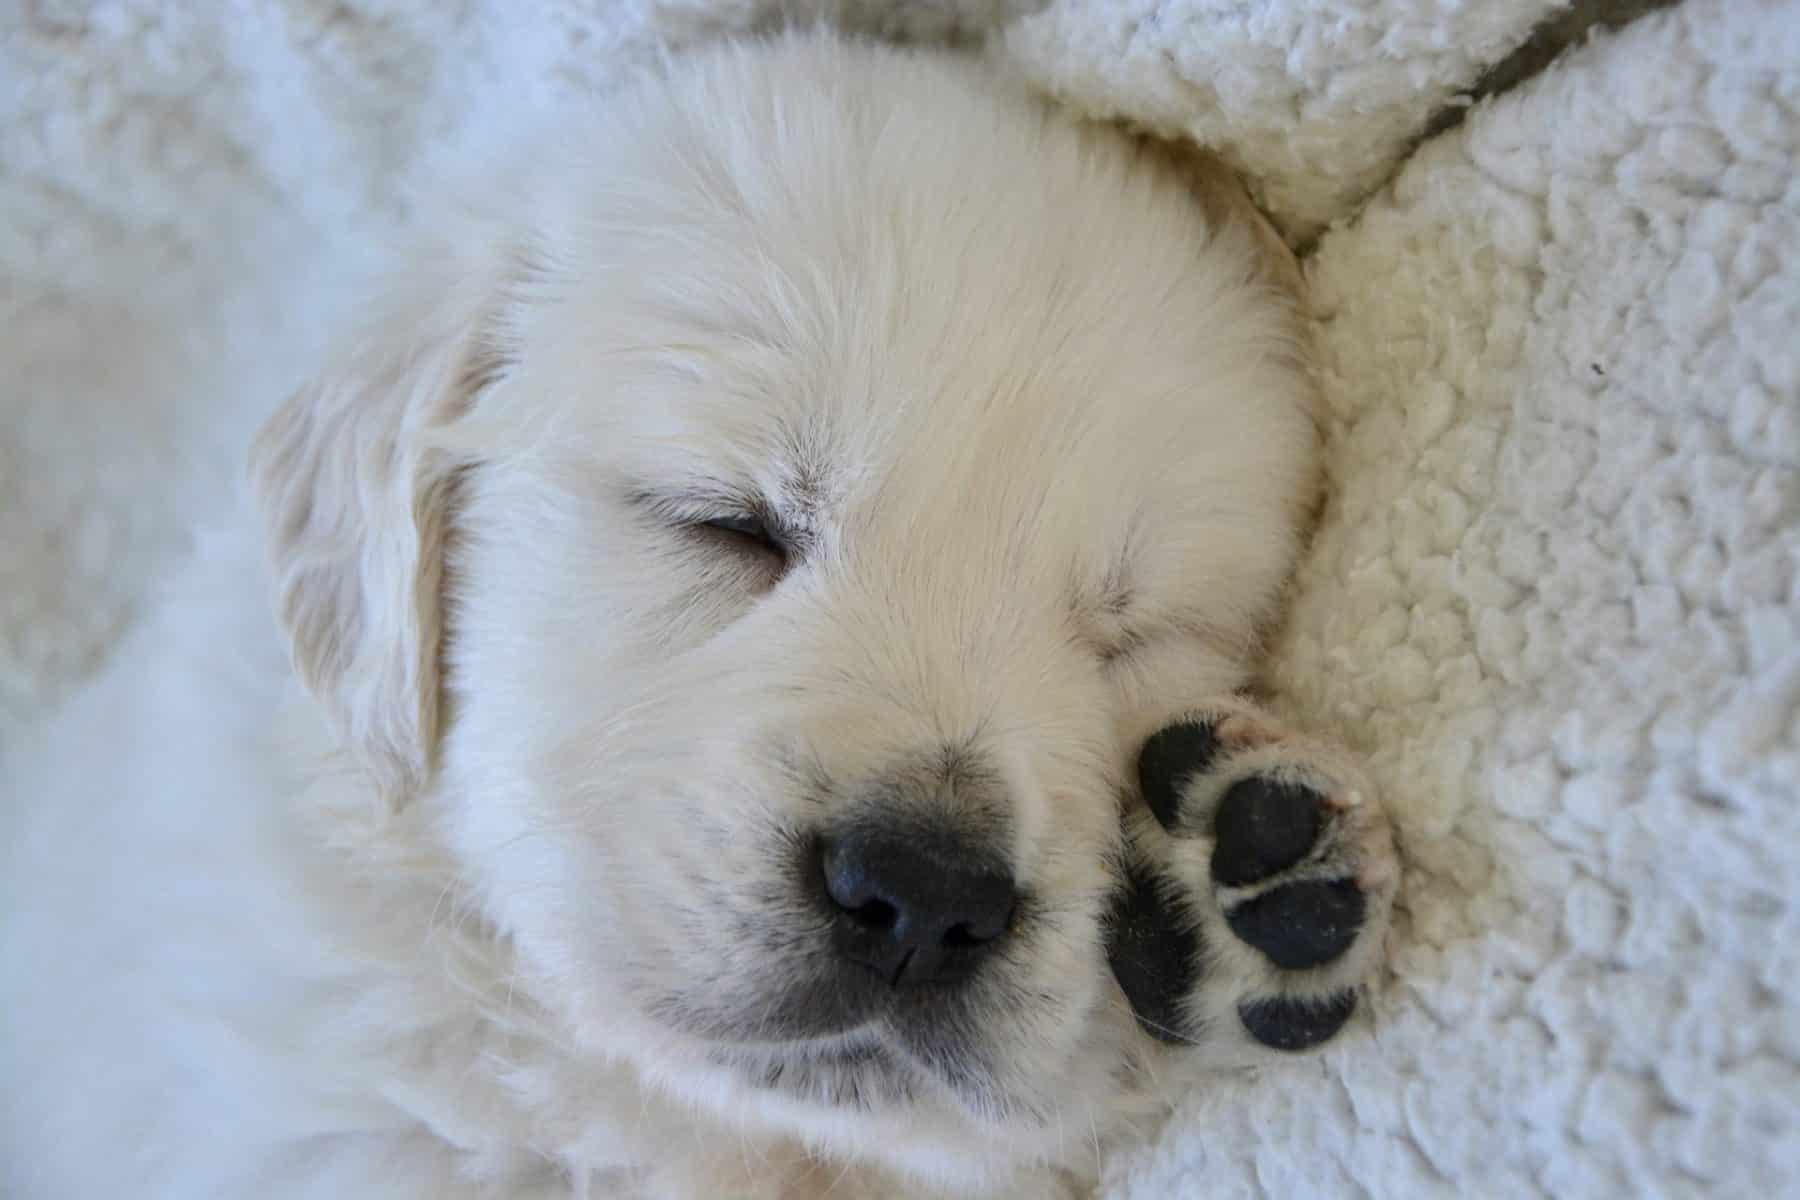 Is My Puppy Sleeping Too Much? | Puppy 